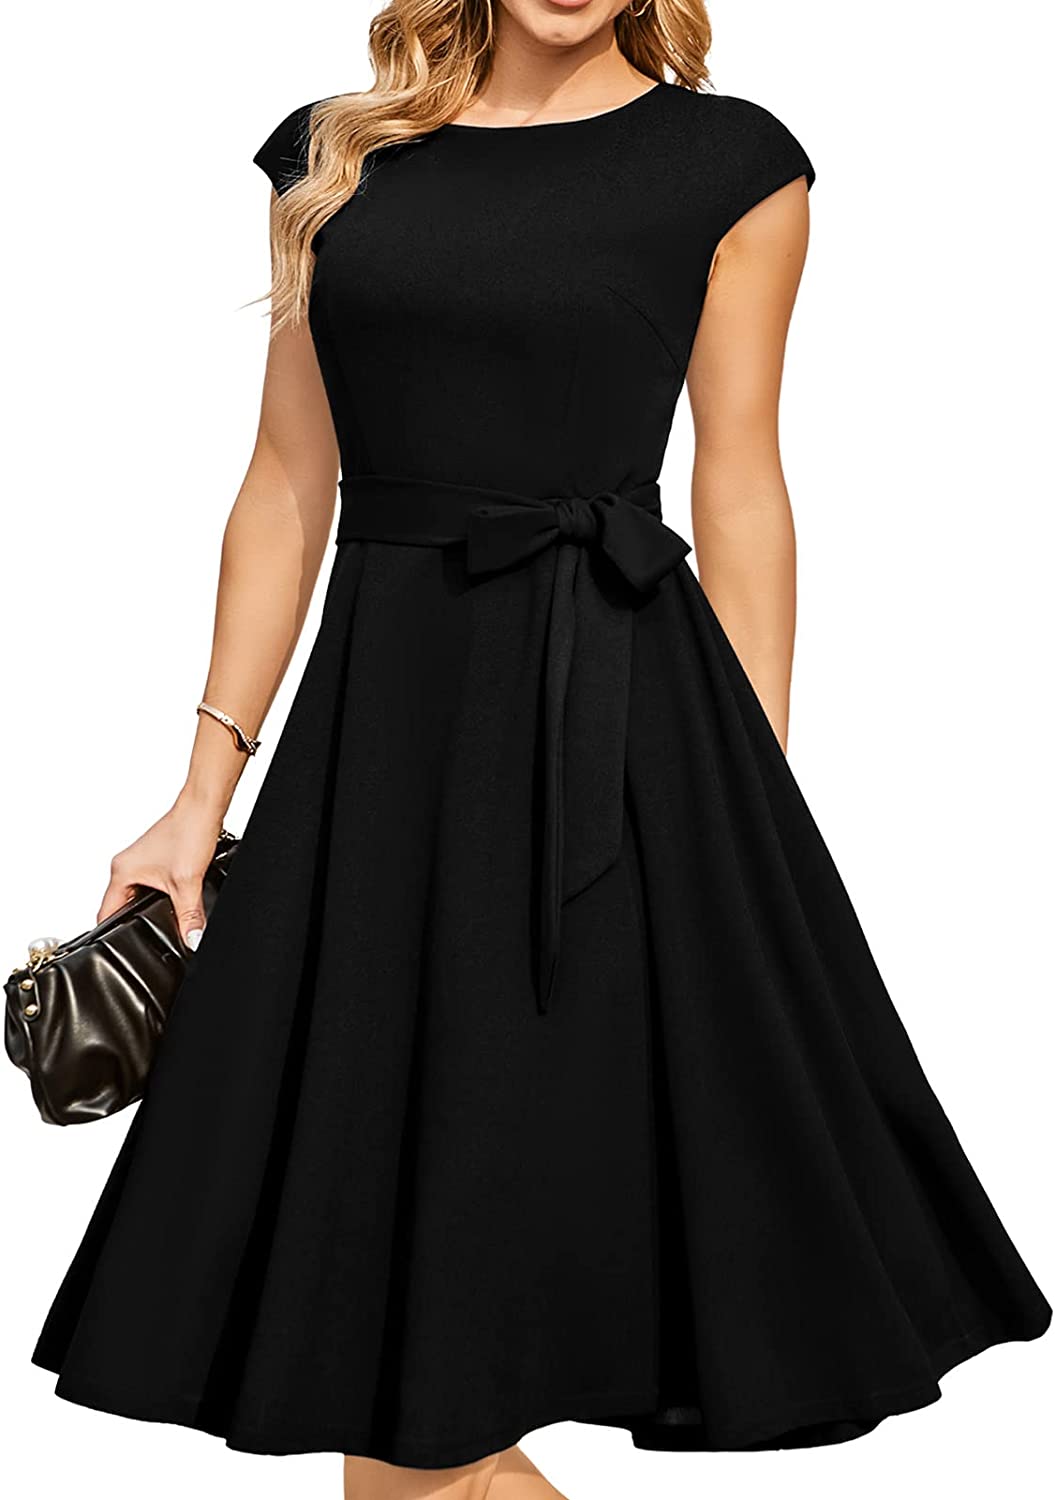 Cheap dresses Dresses online for sale  Fashion dresses, Shop casual dresses,  Casual dresses